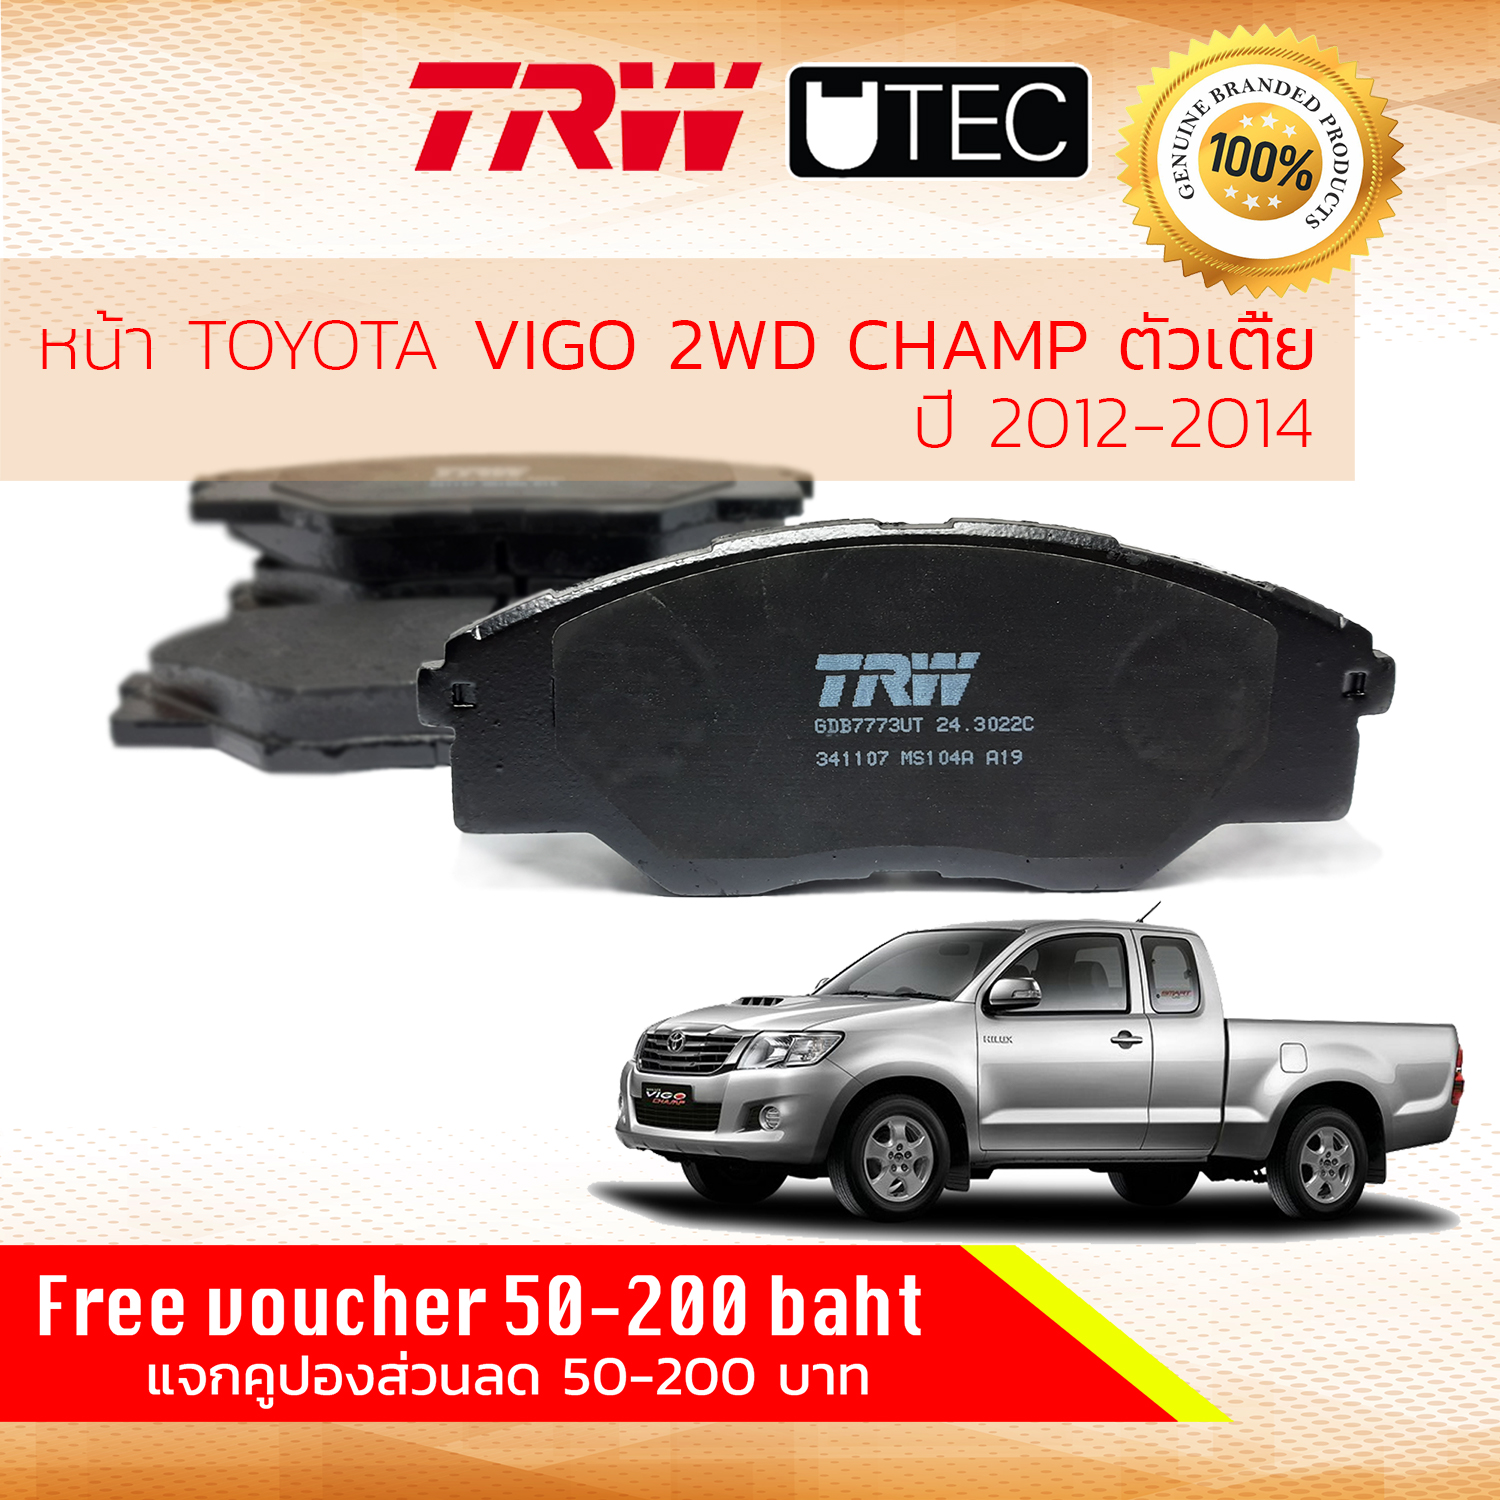 [TRW Premium] ผ้าดิสเบรคหน้า ผ้าเบรคหน้า Toyota Hilux VIGO CHAMP ปี 2012-2014  2WD ตัวเตี้ยเท่านั้น  TRW U-TEC GDB 7773 UT ไฮลักซ์ วีโก้ วีโก แชมป์ ปี 12,13,14,55,56,57